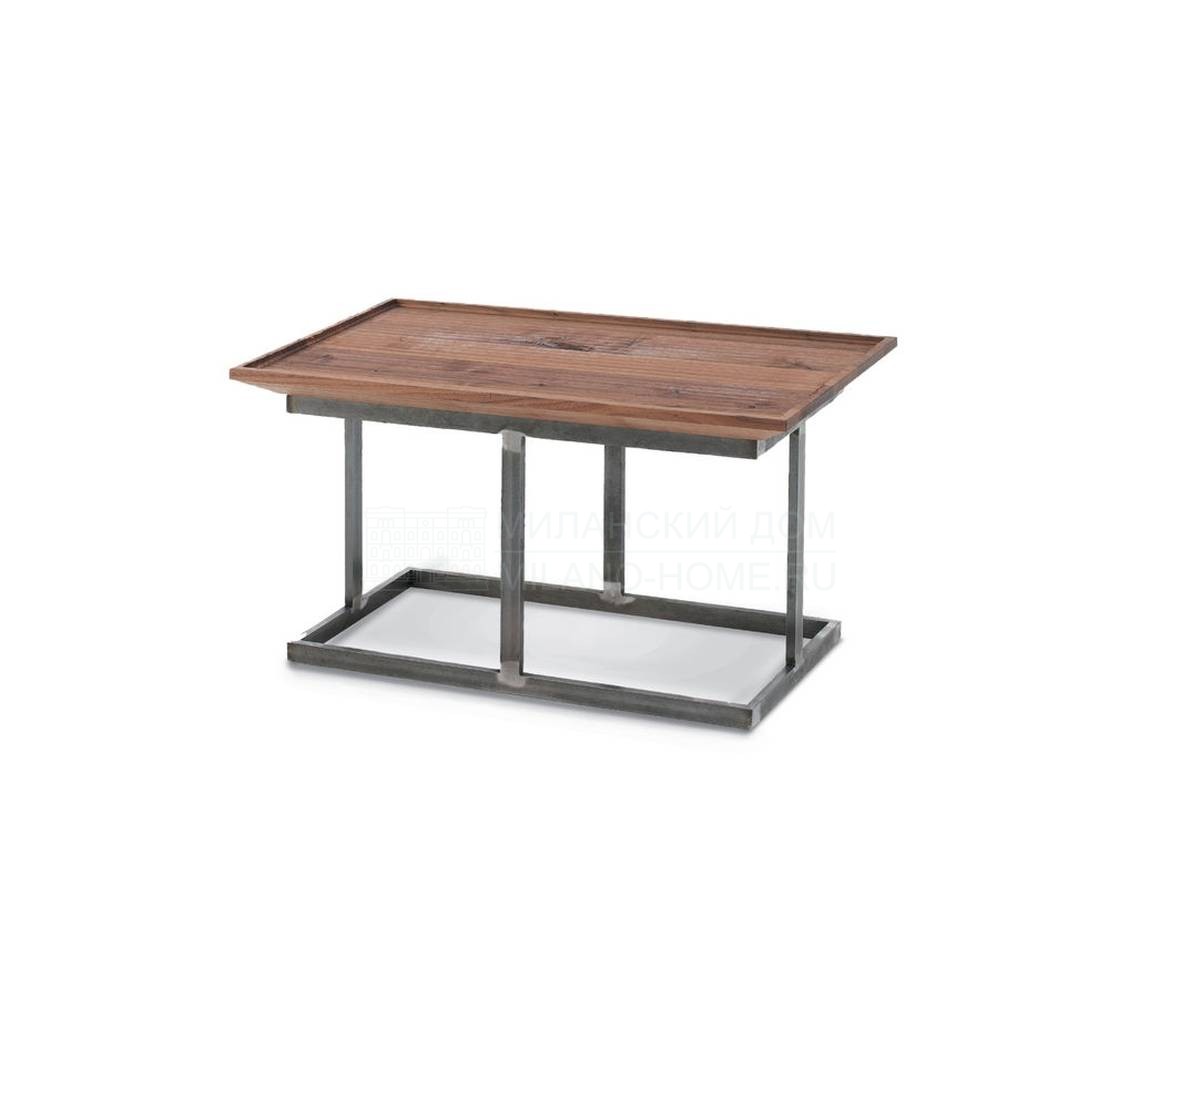 Кофейный столик Nest Squared & Round/ small table из Италии фабрики RIVA1920